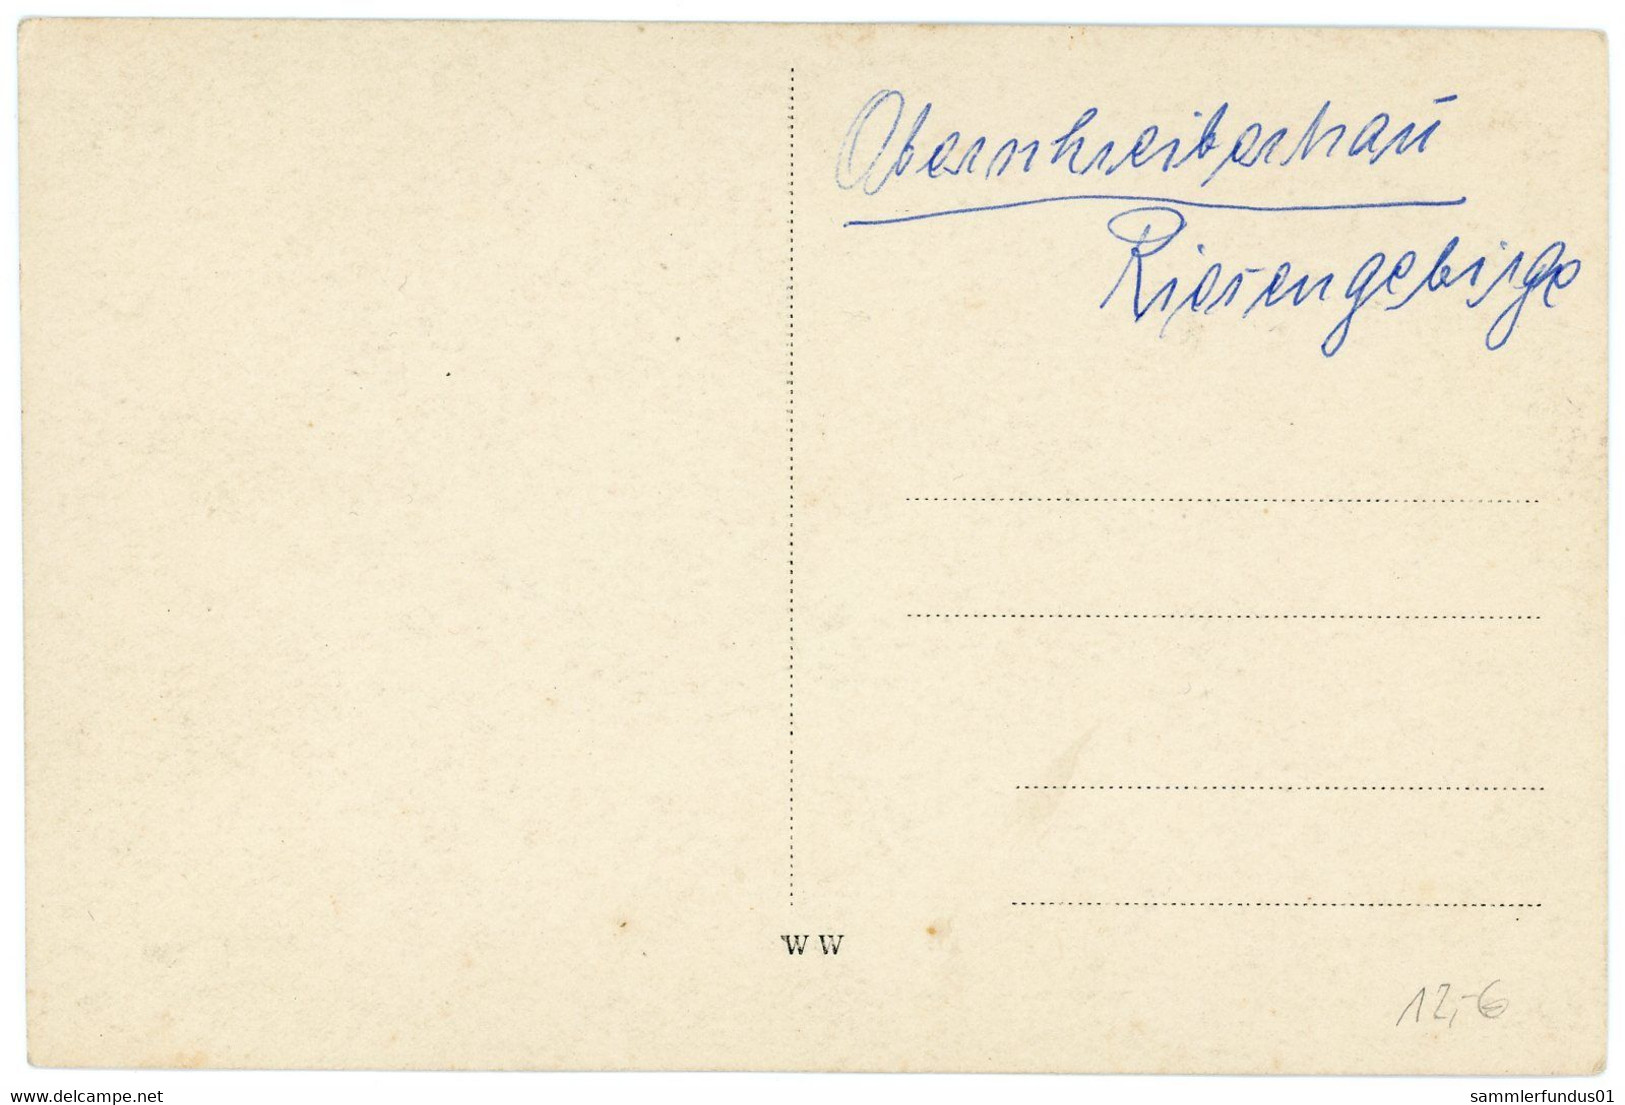 Foto AK/CP Oberschreiberhau Mariental ?  Szklarska Poreba  Ungel/uncirc.ca. 1920  Erhaltung/Cond.  2   Nr. 1595 - Schlesien